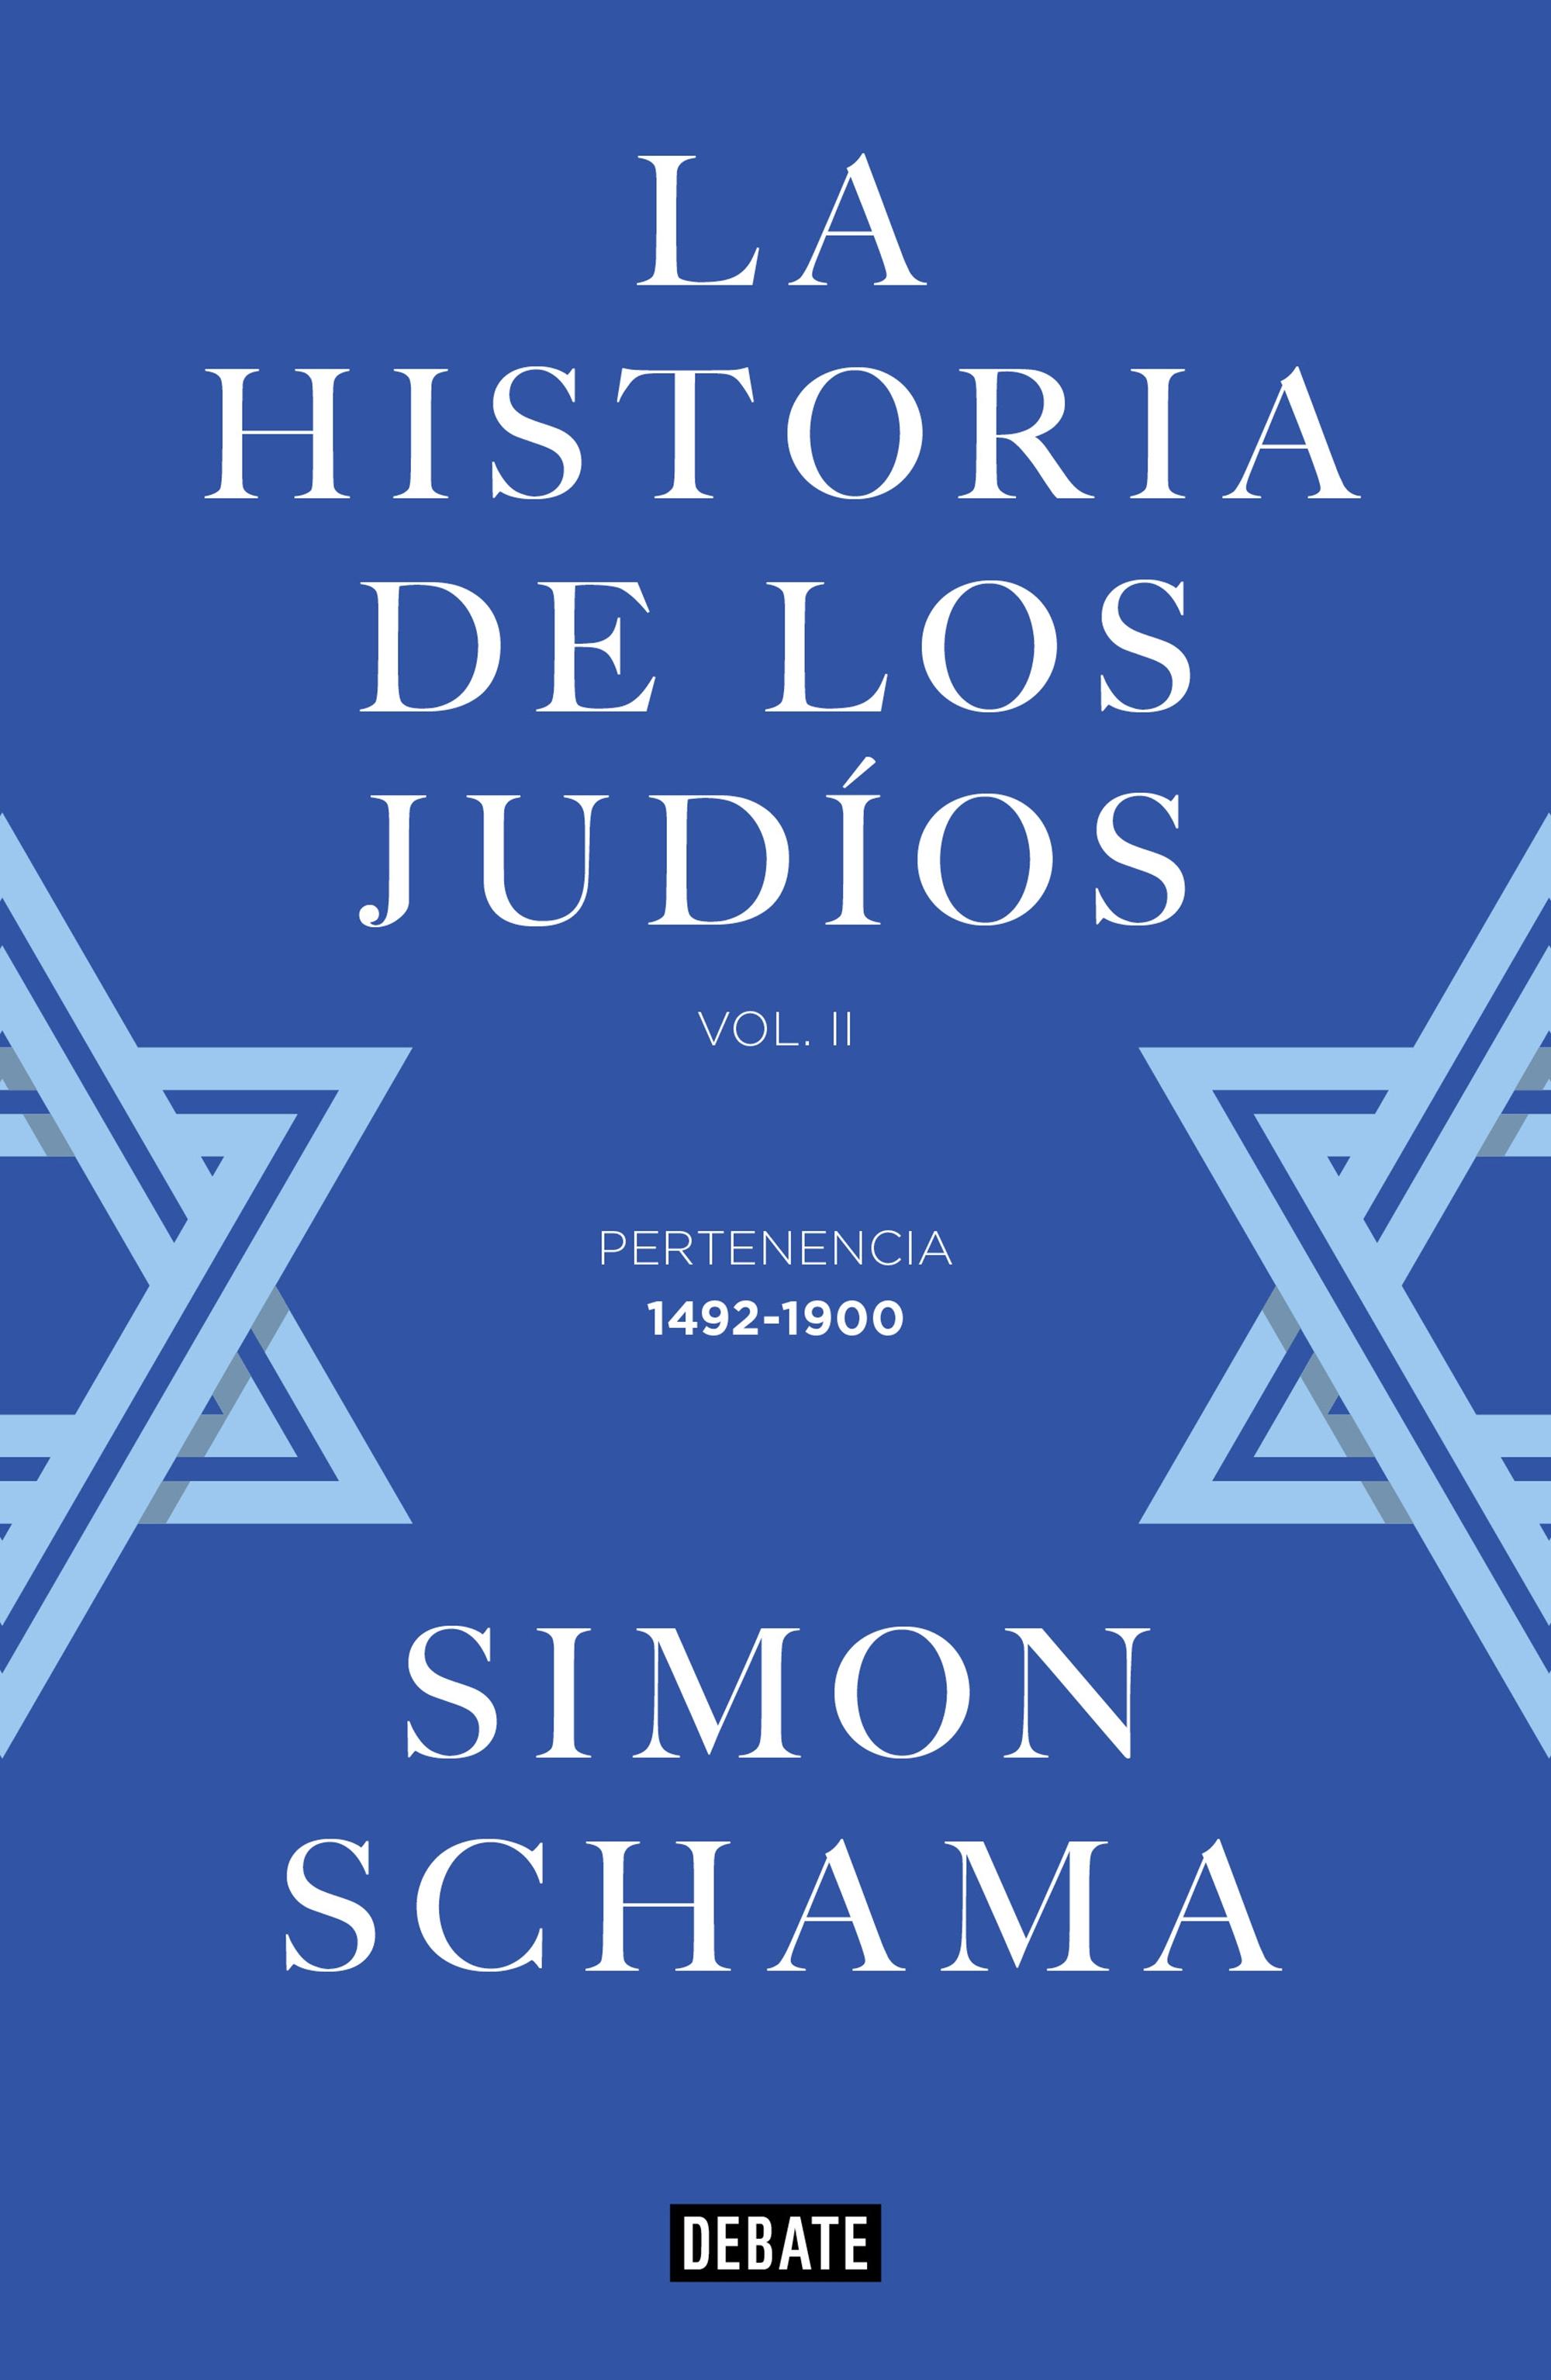 LA HISTORIA DE LOS JUDIOS "Vol. II - Pertenencia, 1492-1900"